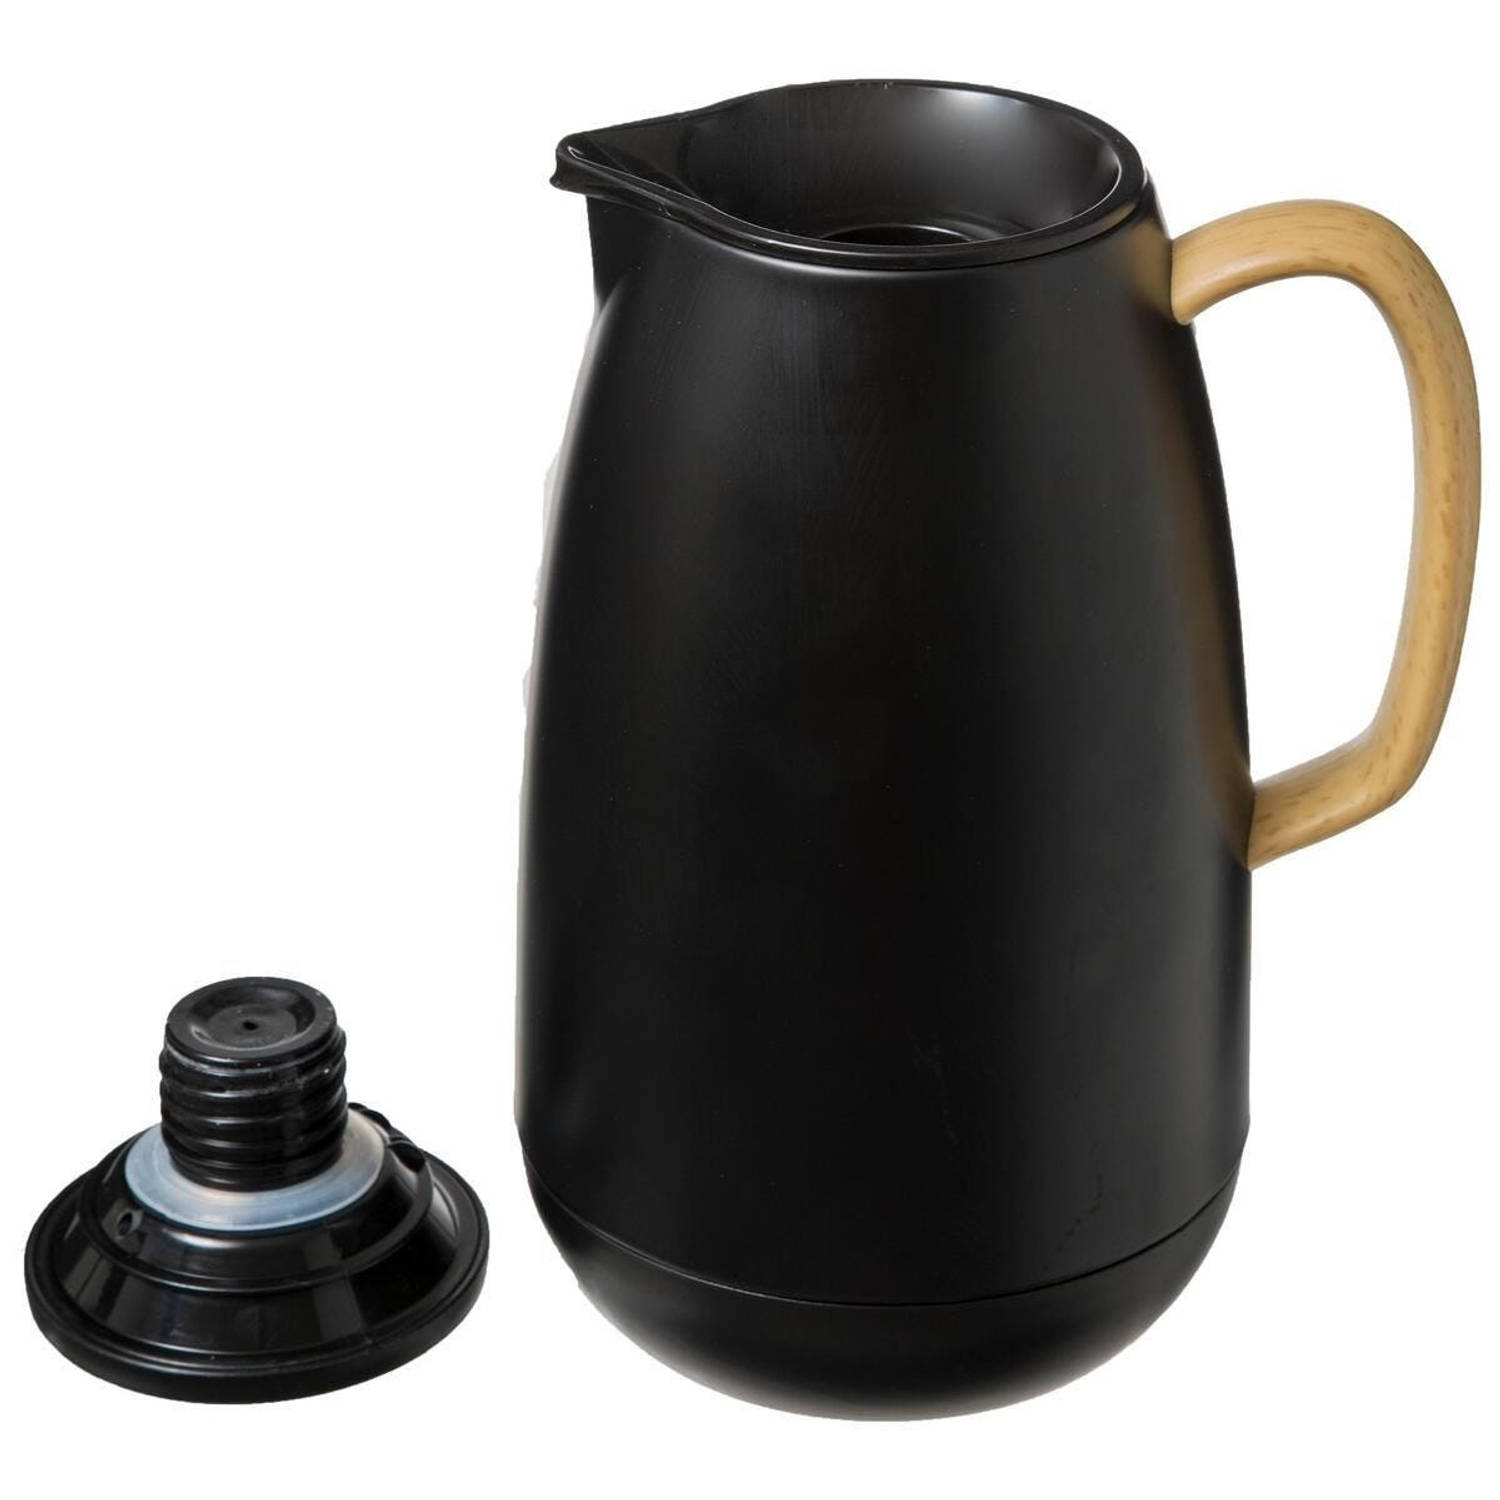 Koffie/thee thermoskan/isoleerkan RVS 1 zwart - Thermoskannen | Blokker